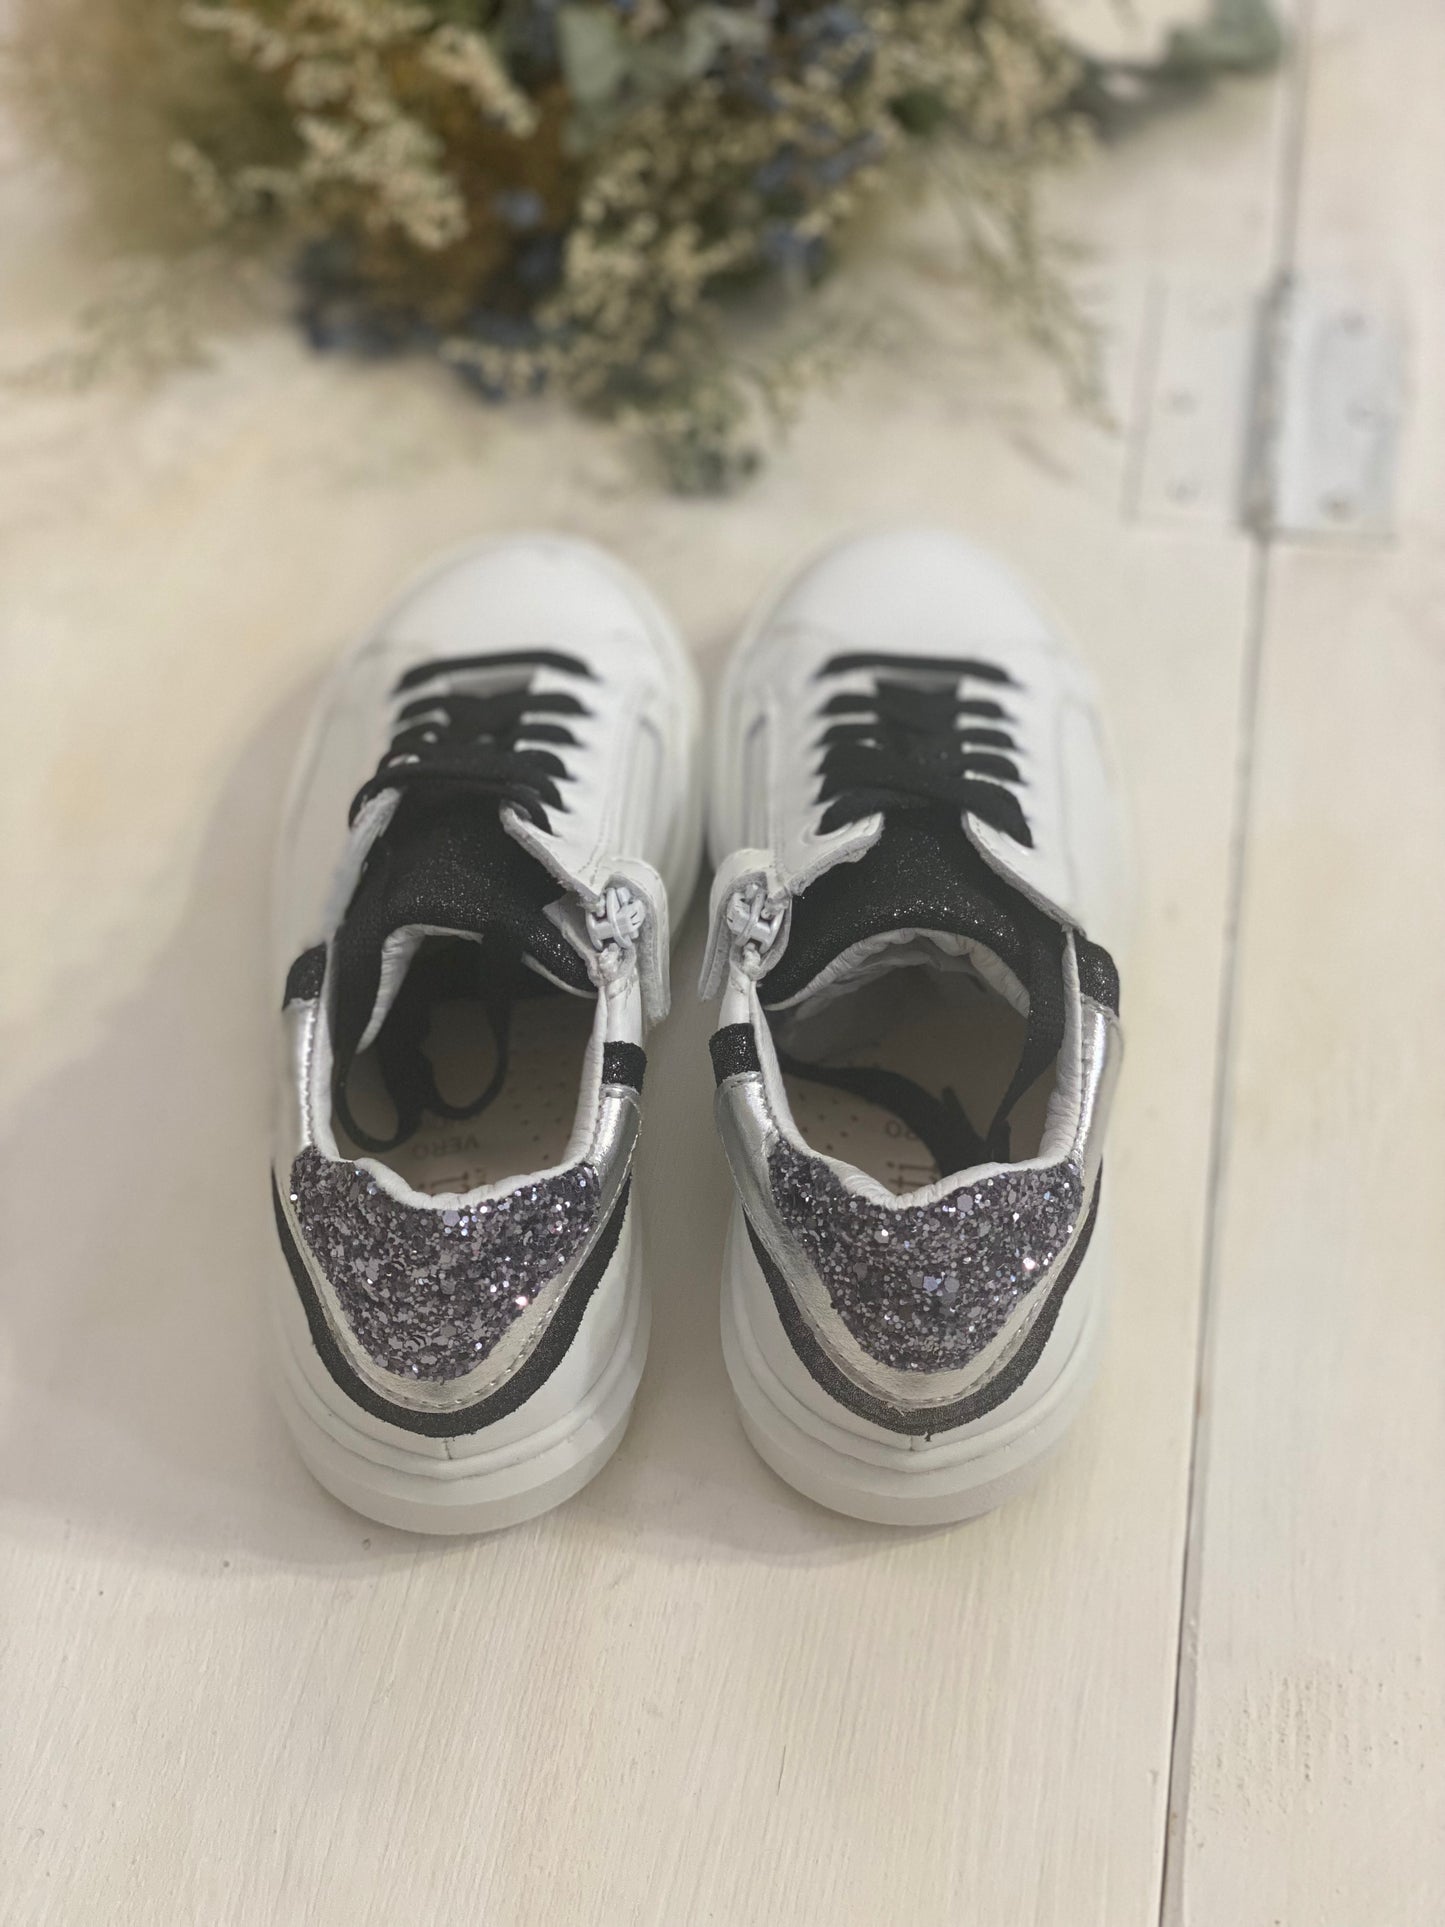 DIANETTI sneakers in pelle bianca con inserto nero e argento